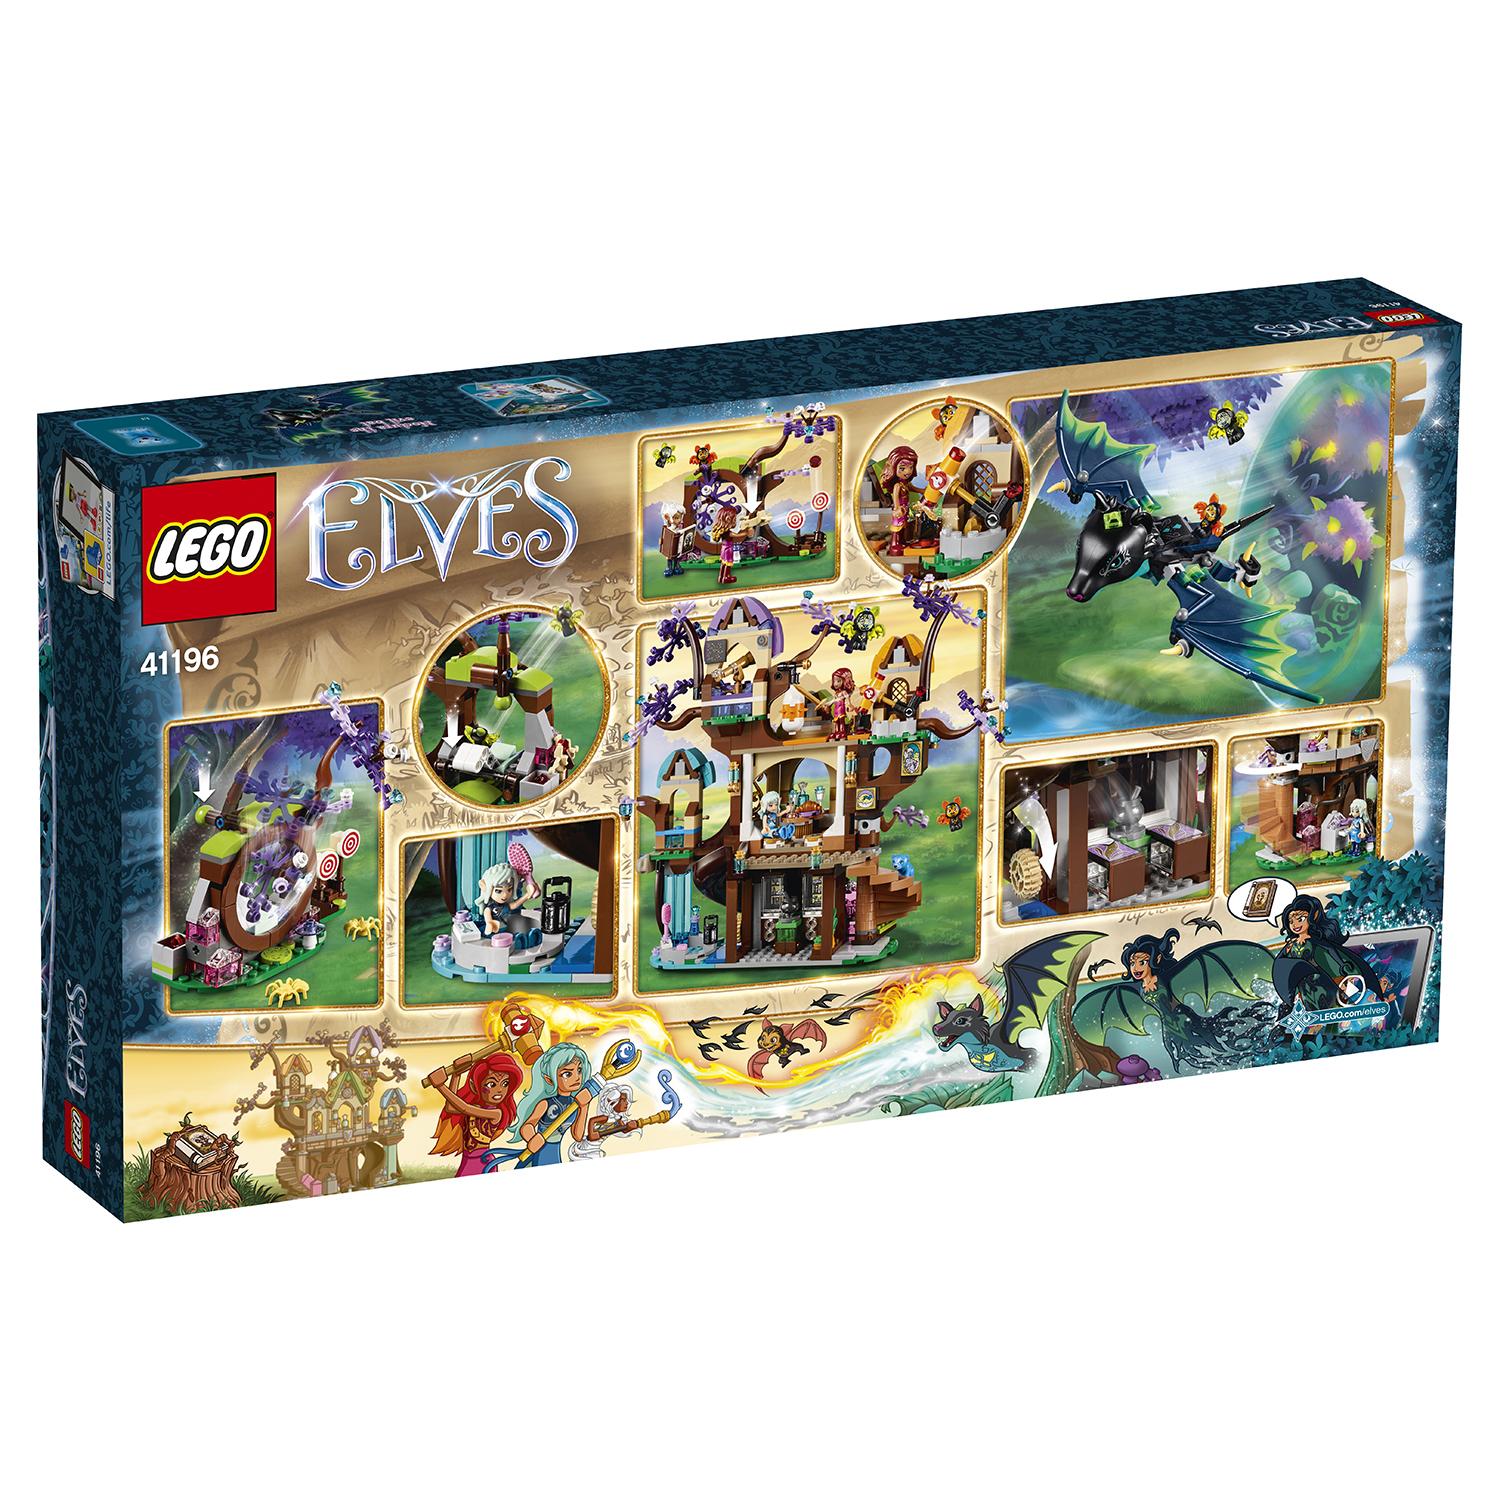 Lego Elves 41196 Нападение летучих мышей на Дерево эльфийских звёзд